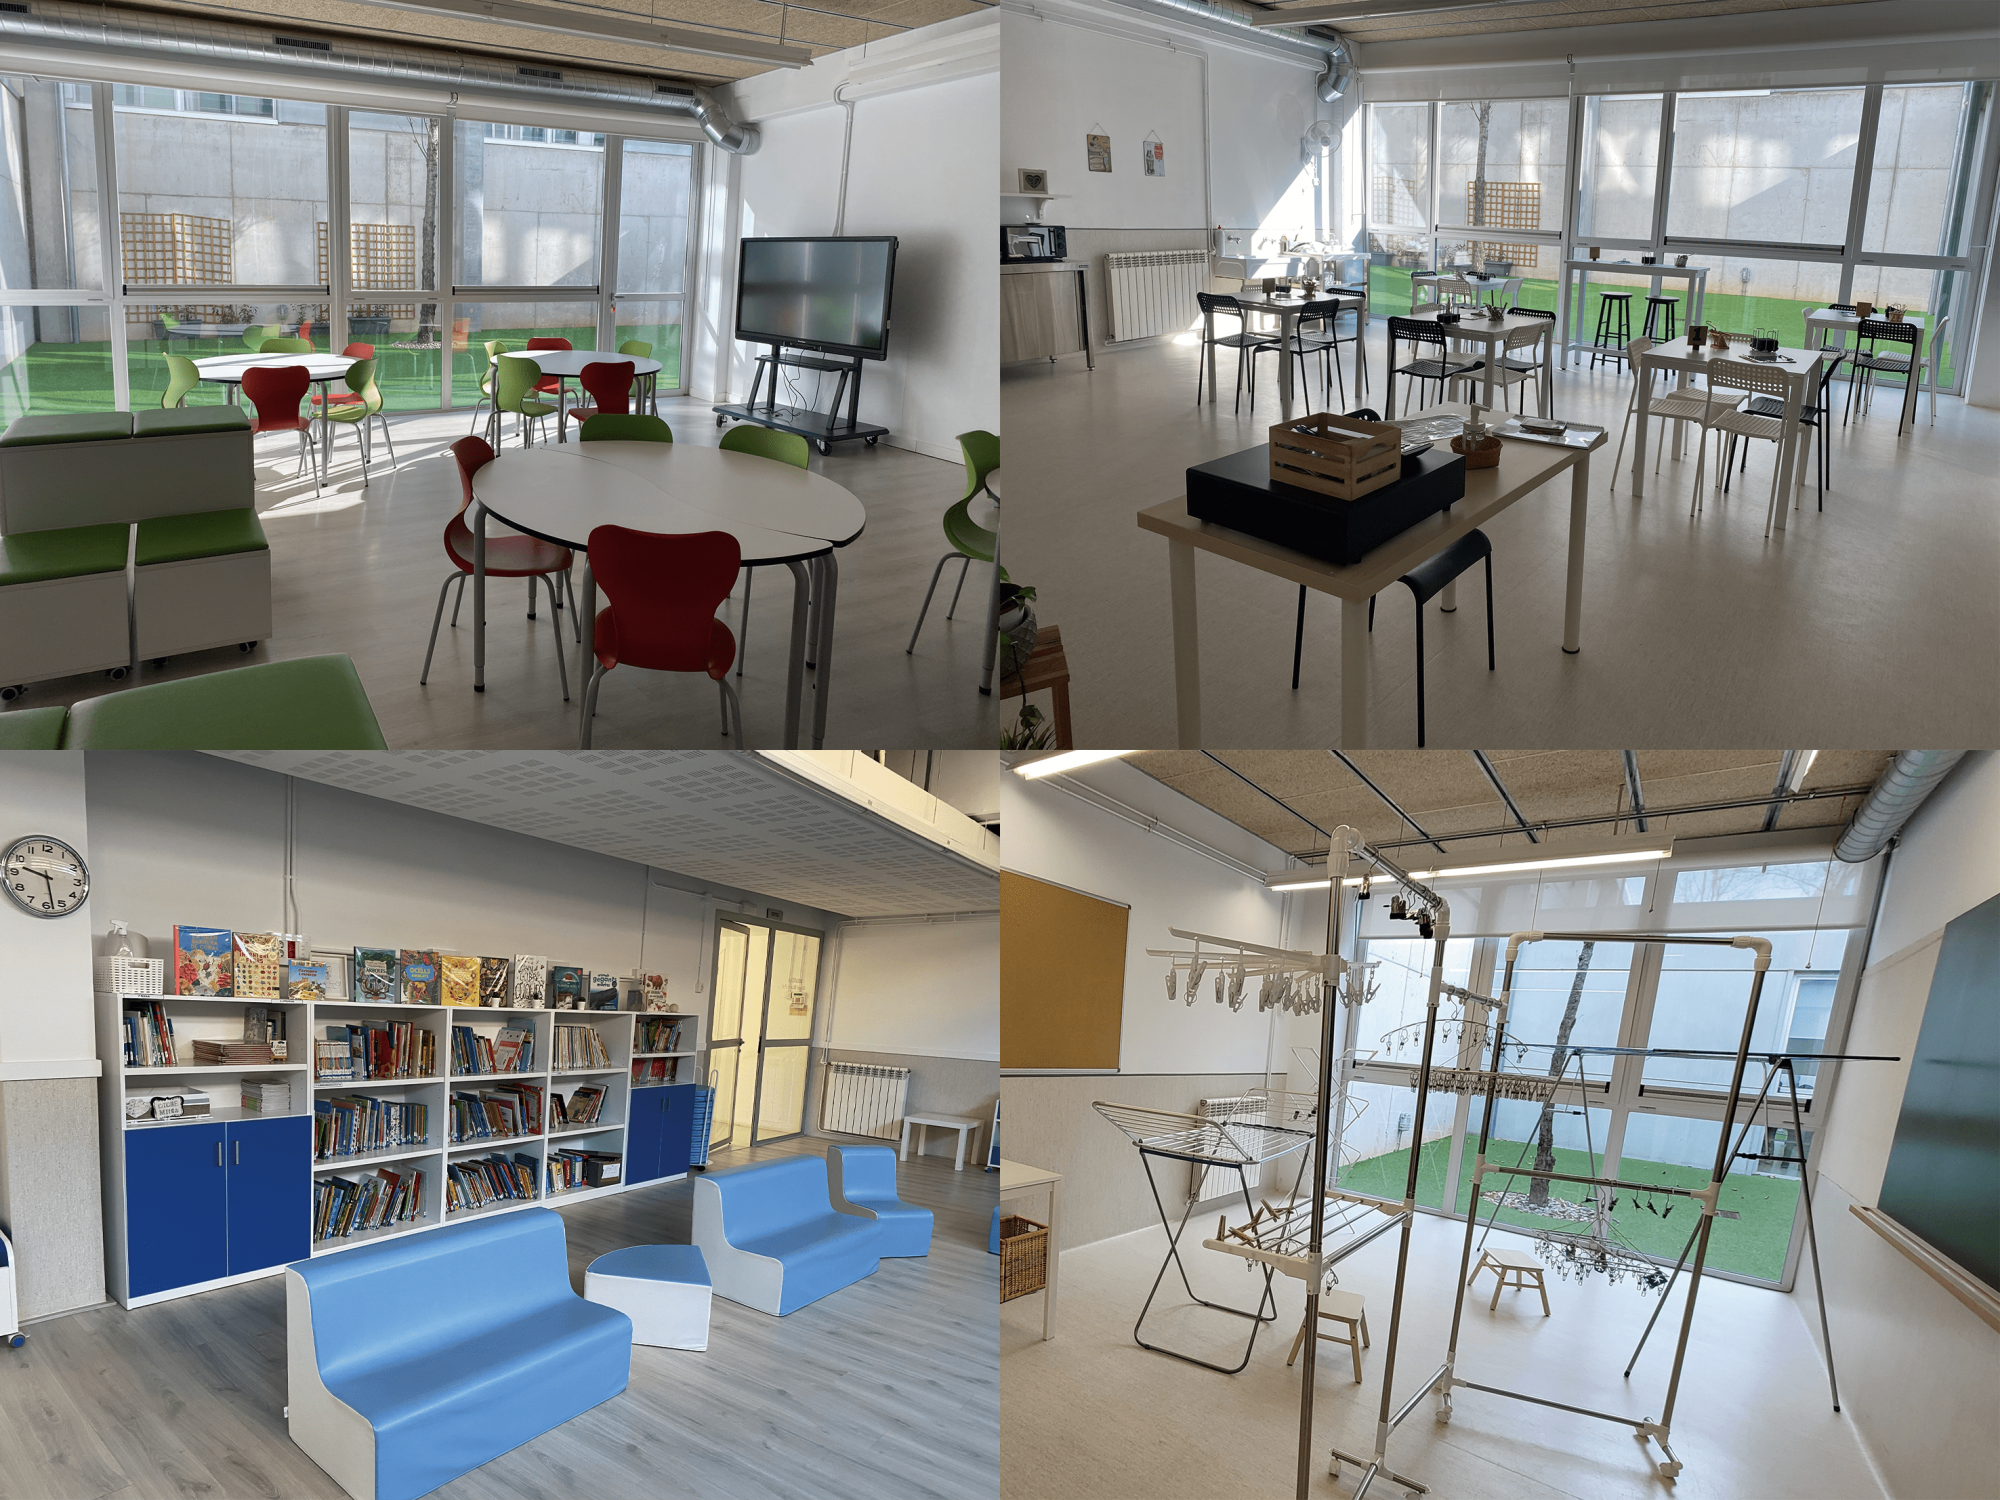 Varios espacios 'inteligentes' del colegio Miquel Martí i Pol de Viladecans: un aula (arriba izquierda, cafetería (arriba derecha), biblioteca (abajo izquierda) y lavandería (abajo derecha)